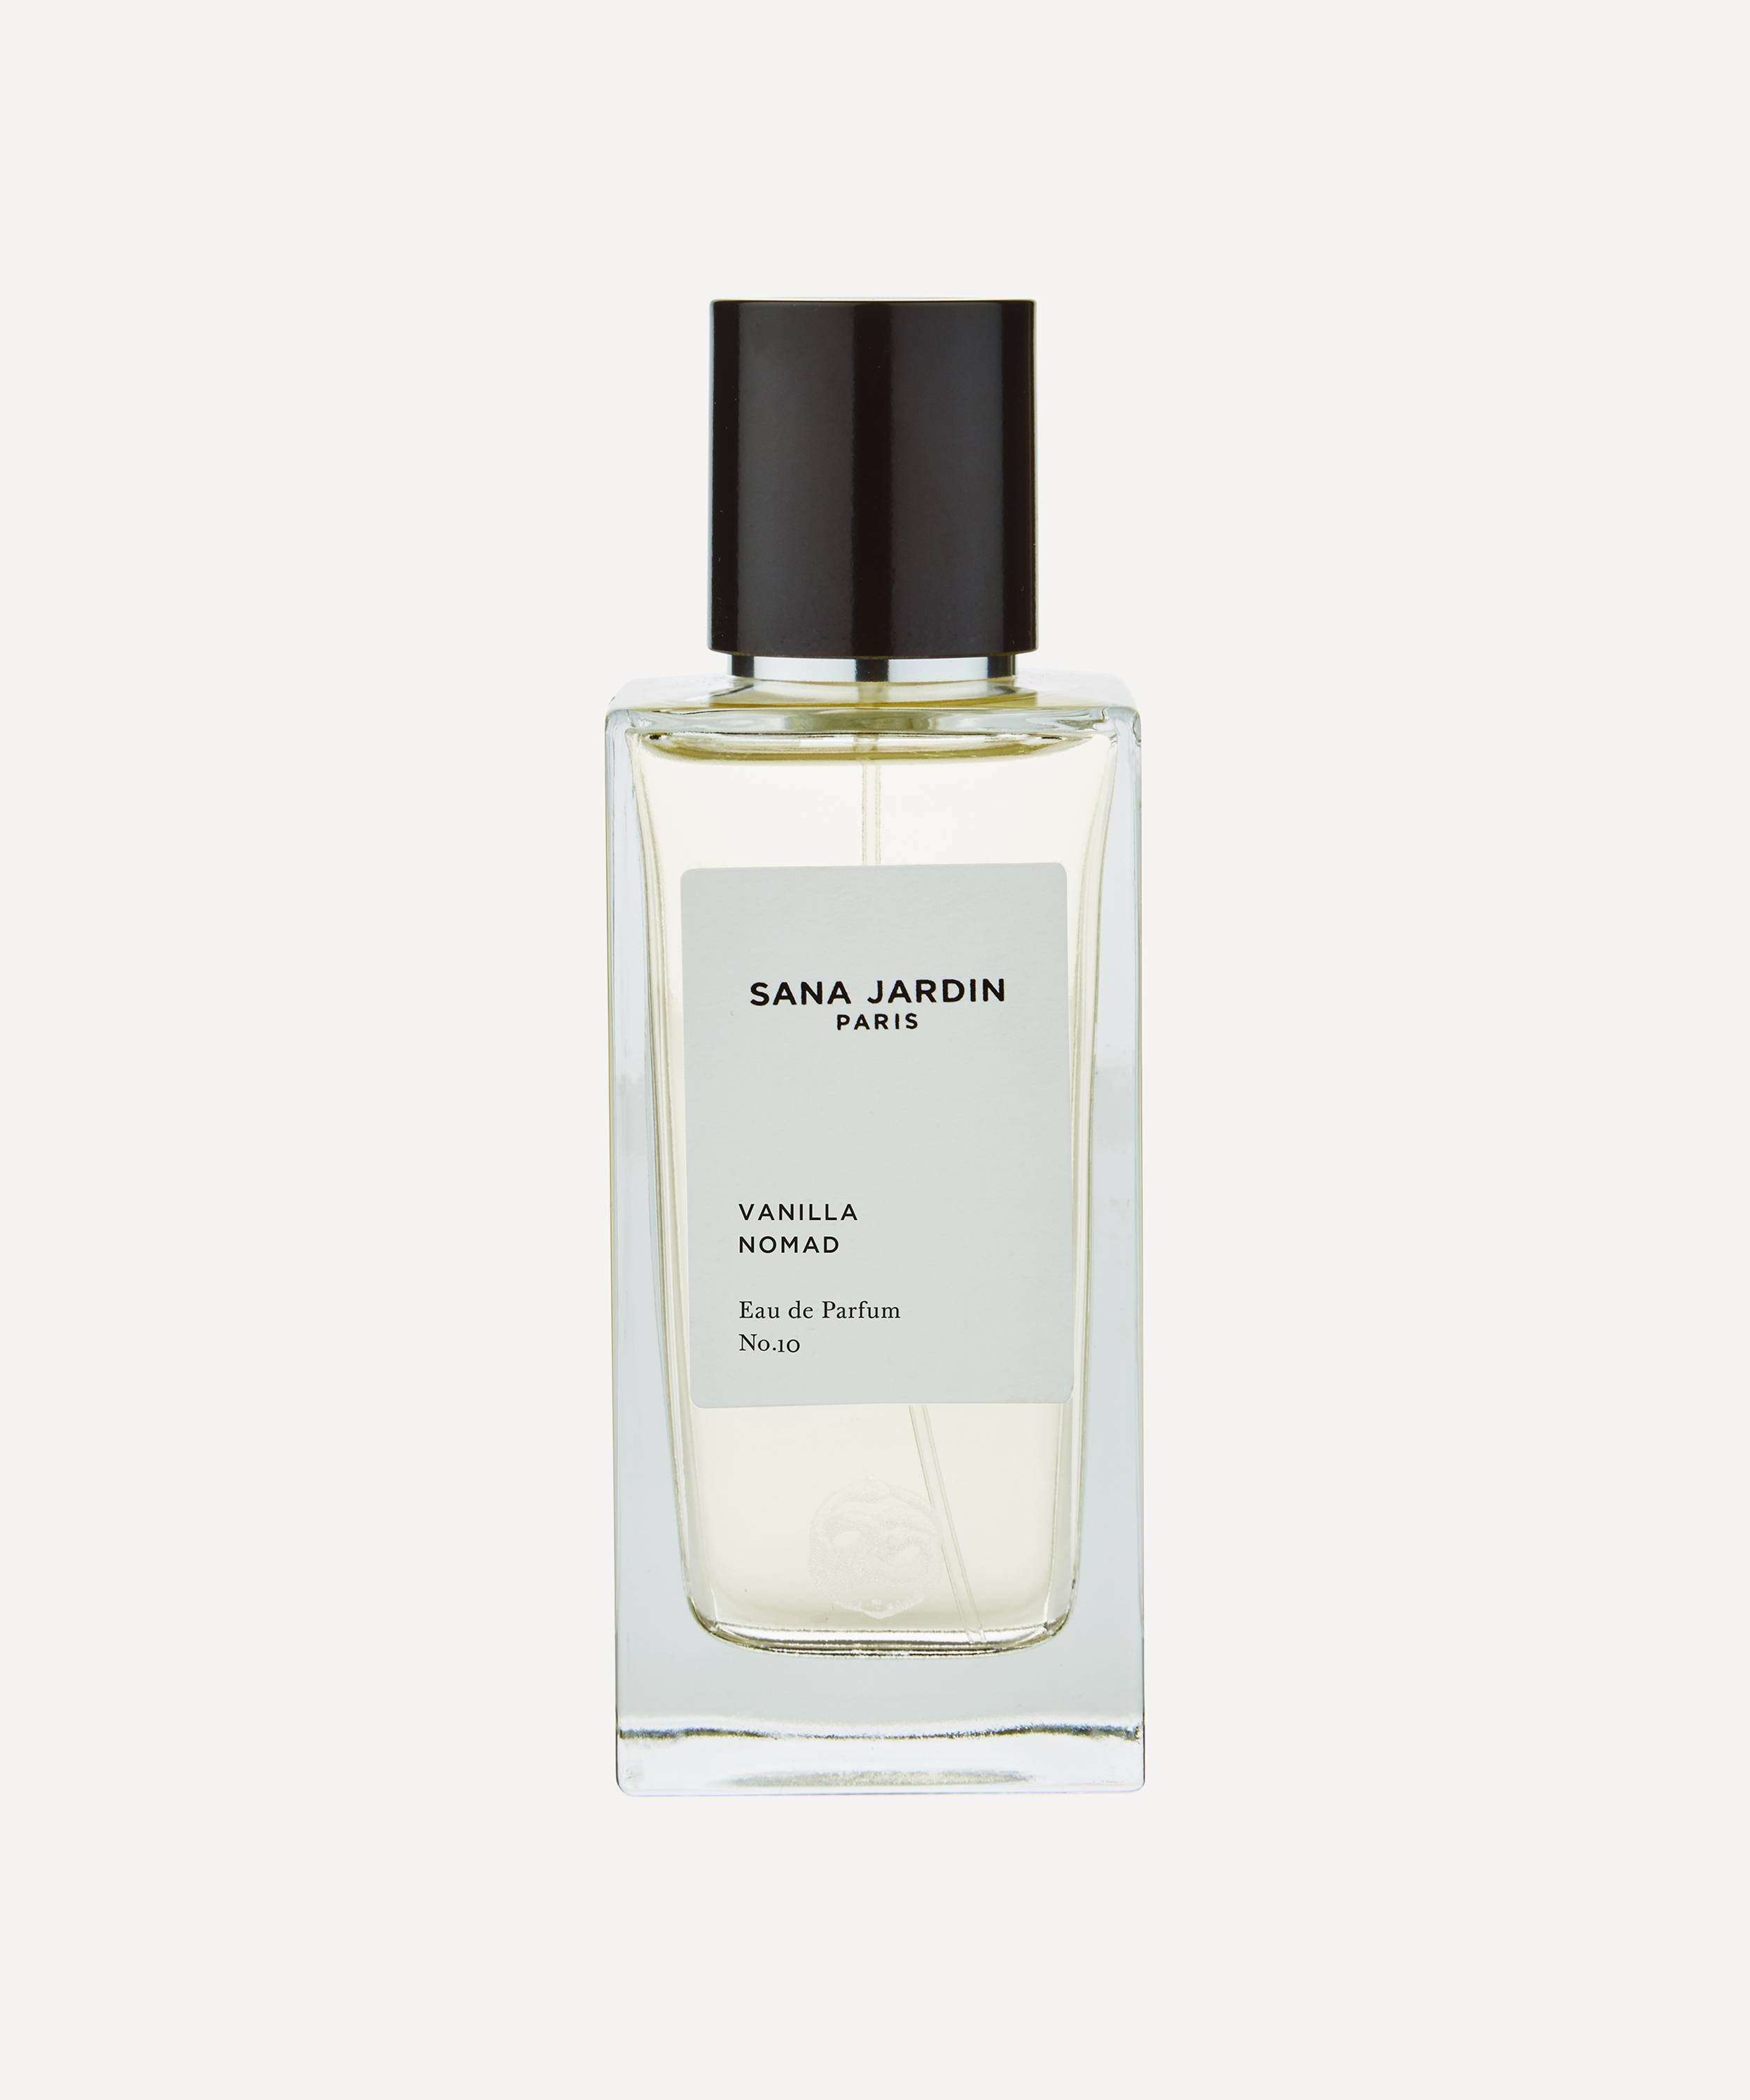 Sana Jardin Vanilla Nomad Eau de Parfum No. 10 100ml | Liberty